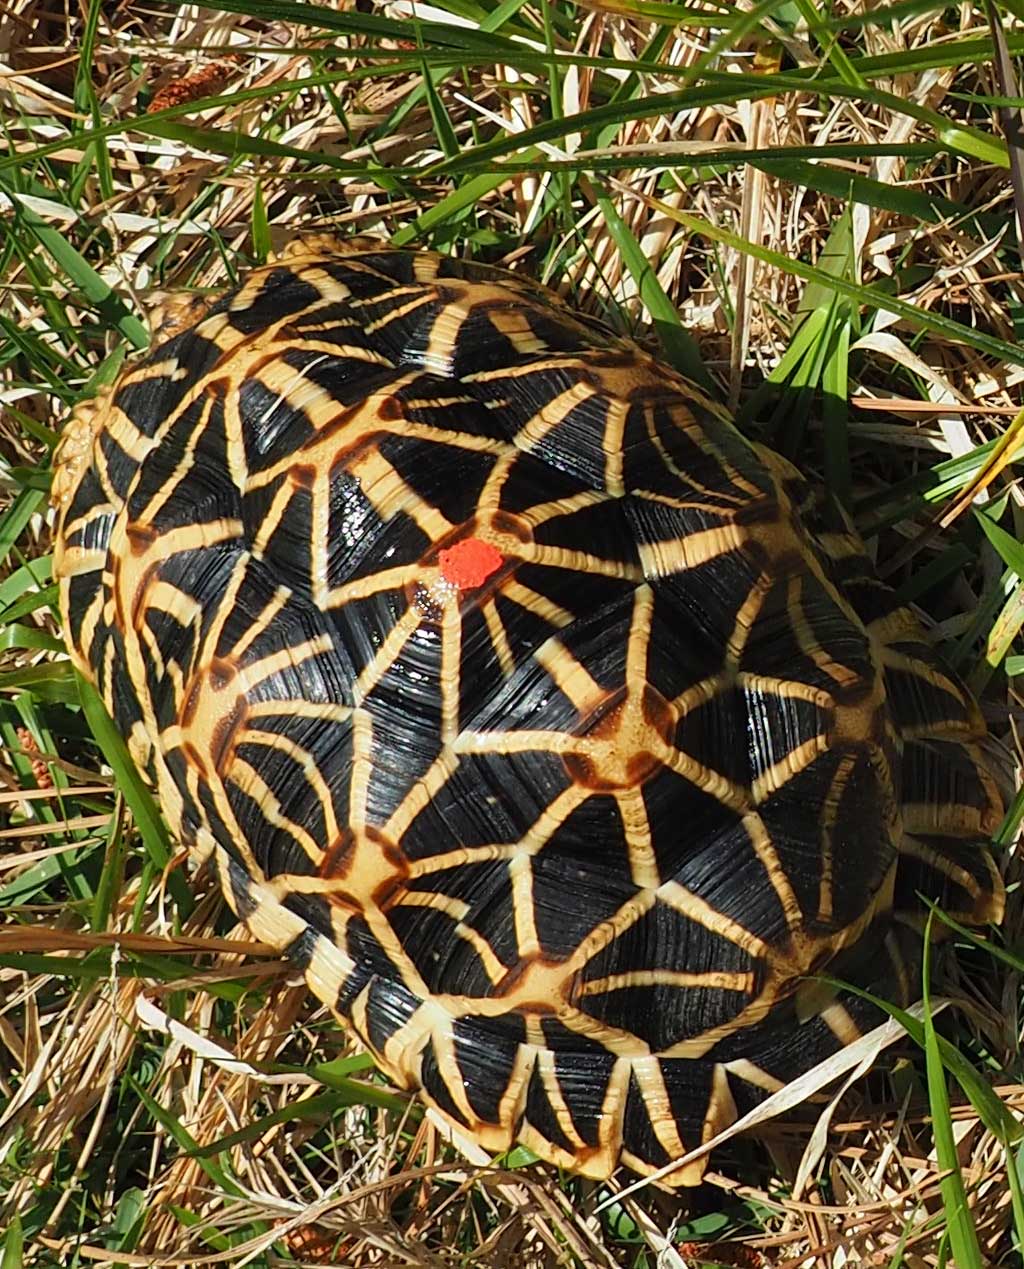 male Sir Lankan star tortoise